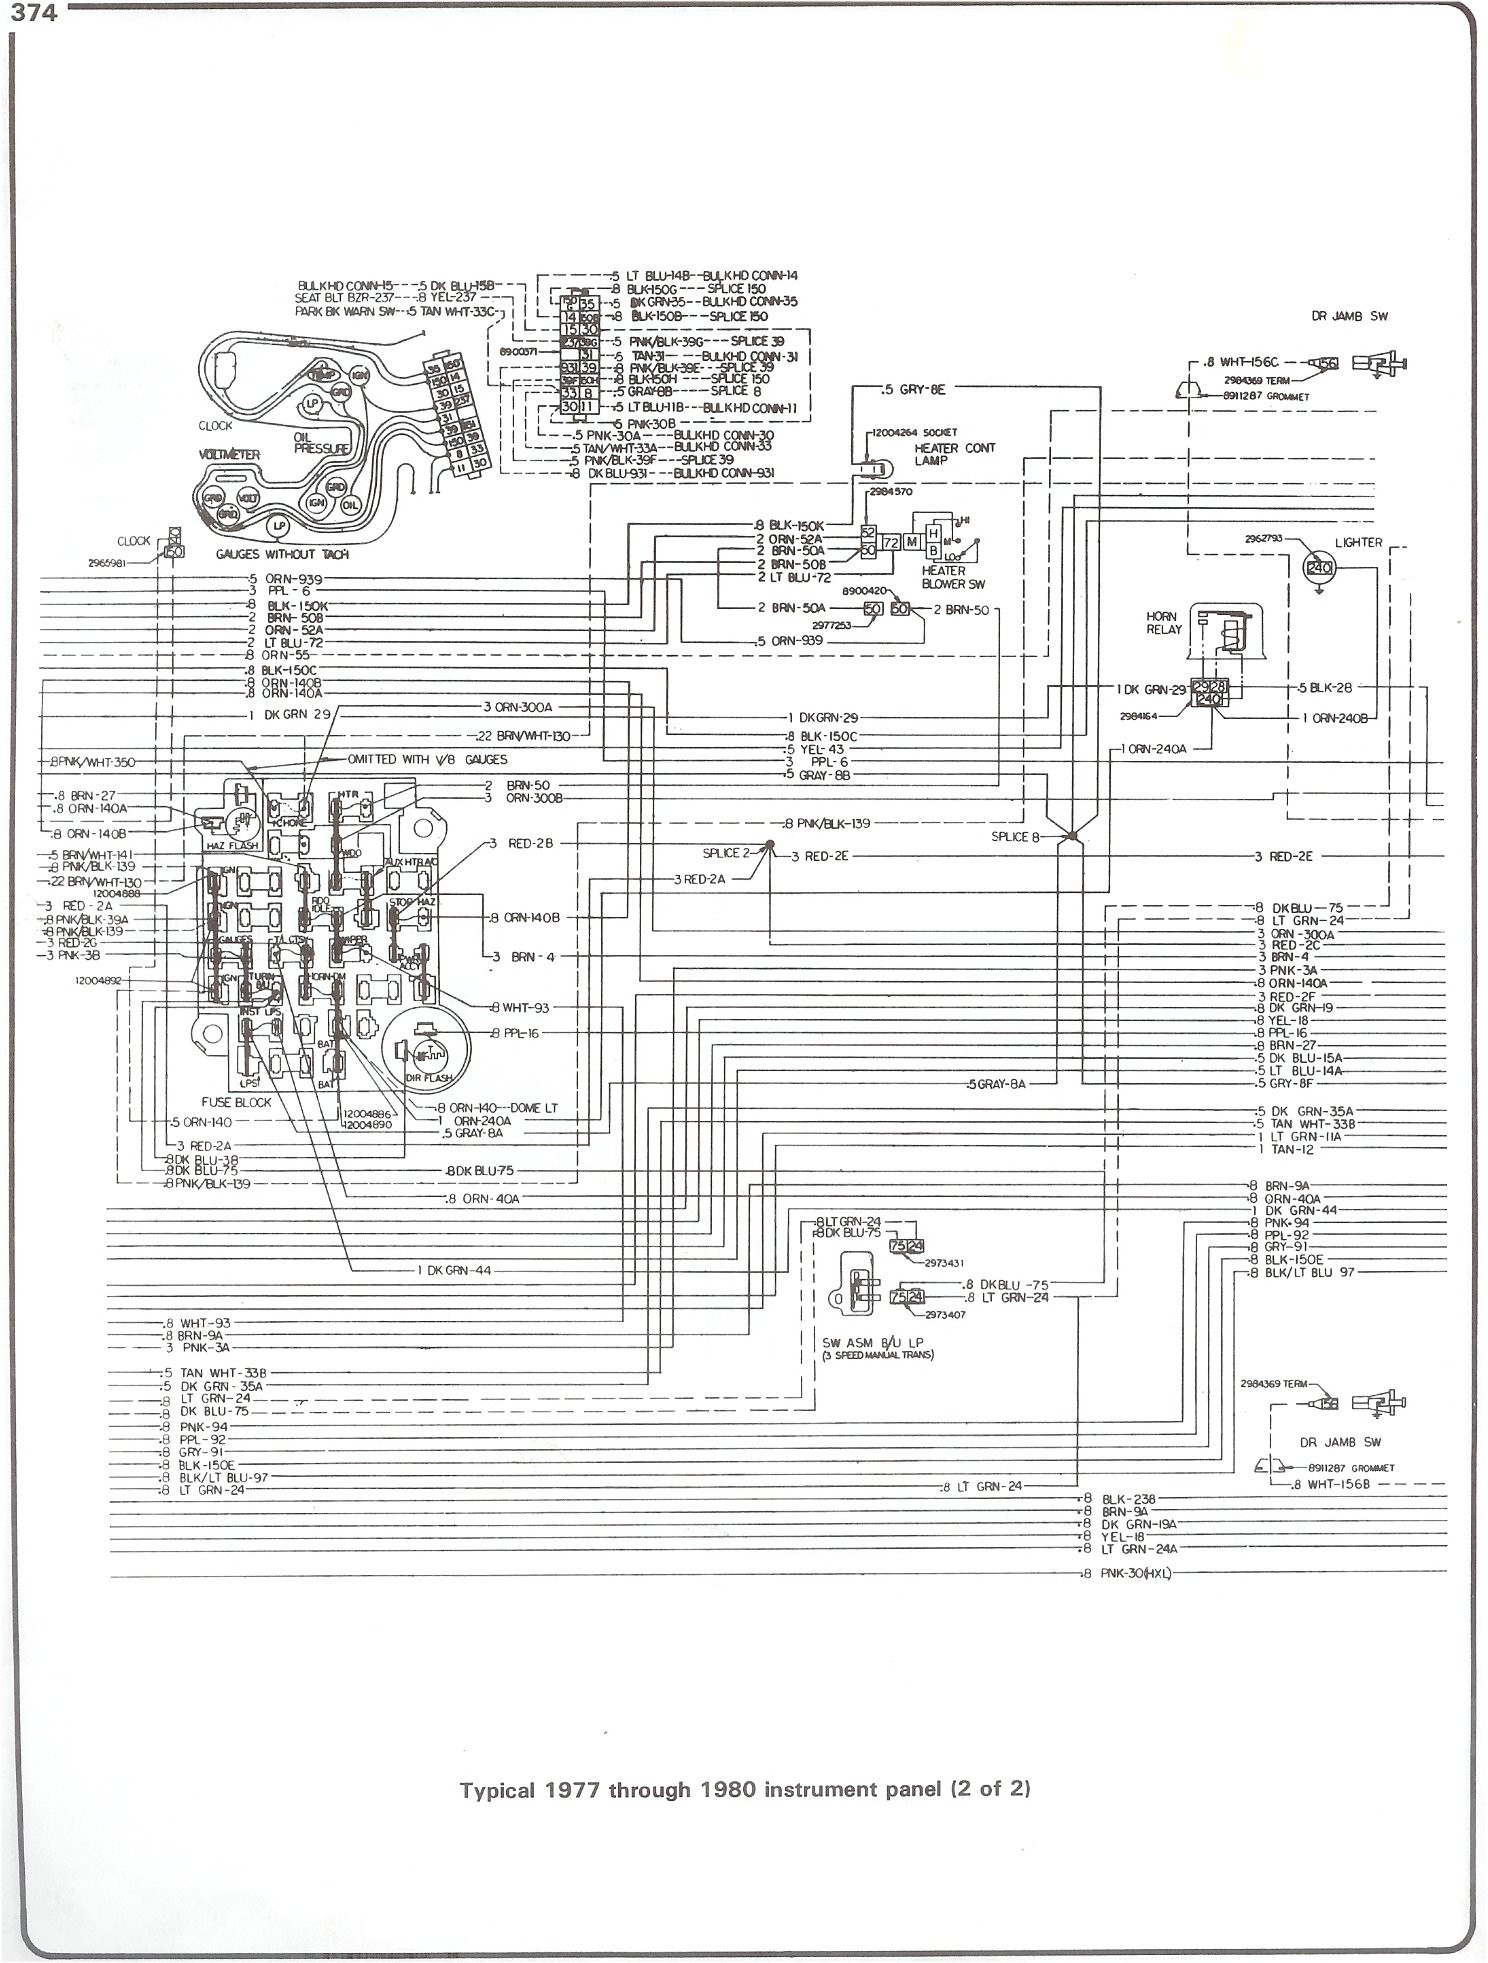 1980 Chevrolet Wiring Diagram from detoxicrecenze.com